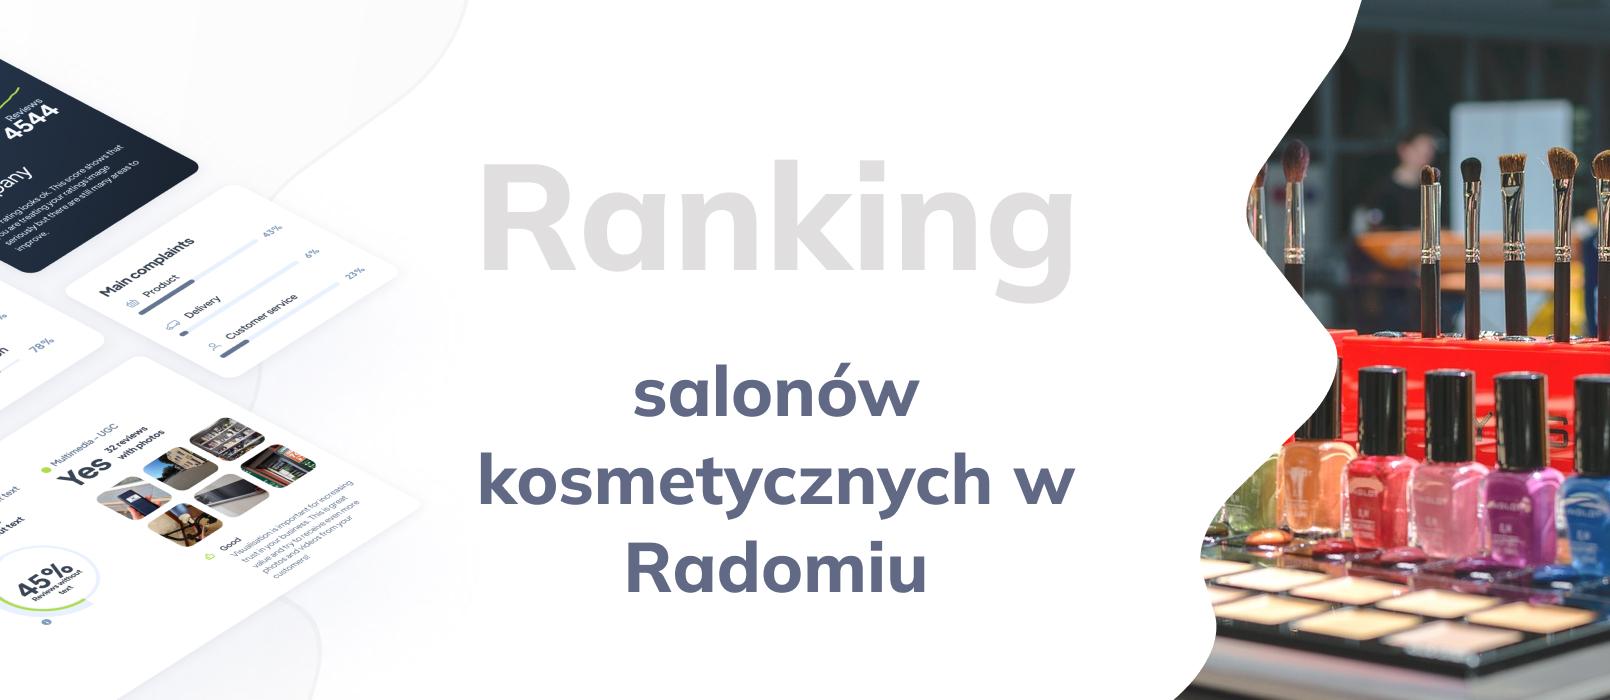 Salony kosmetyczne w Radomiu - ranking TOP 10